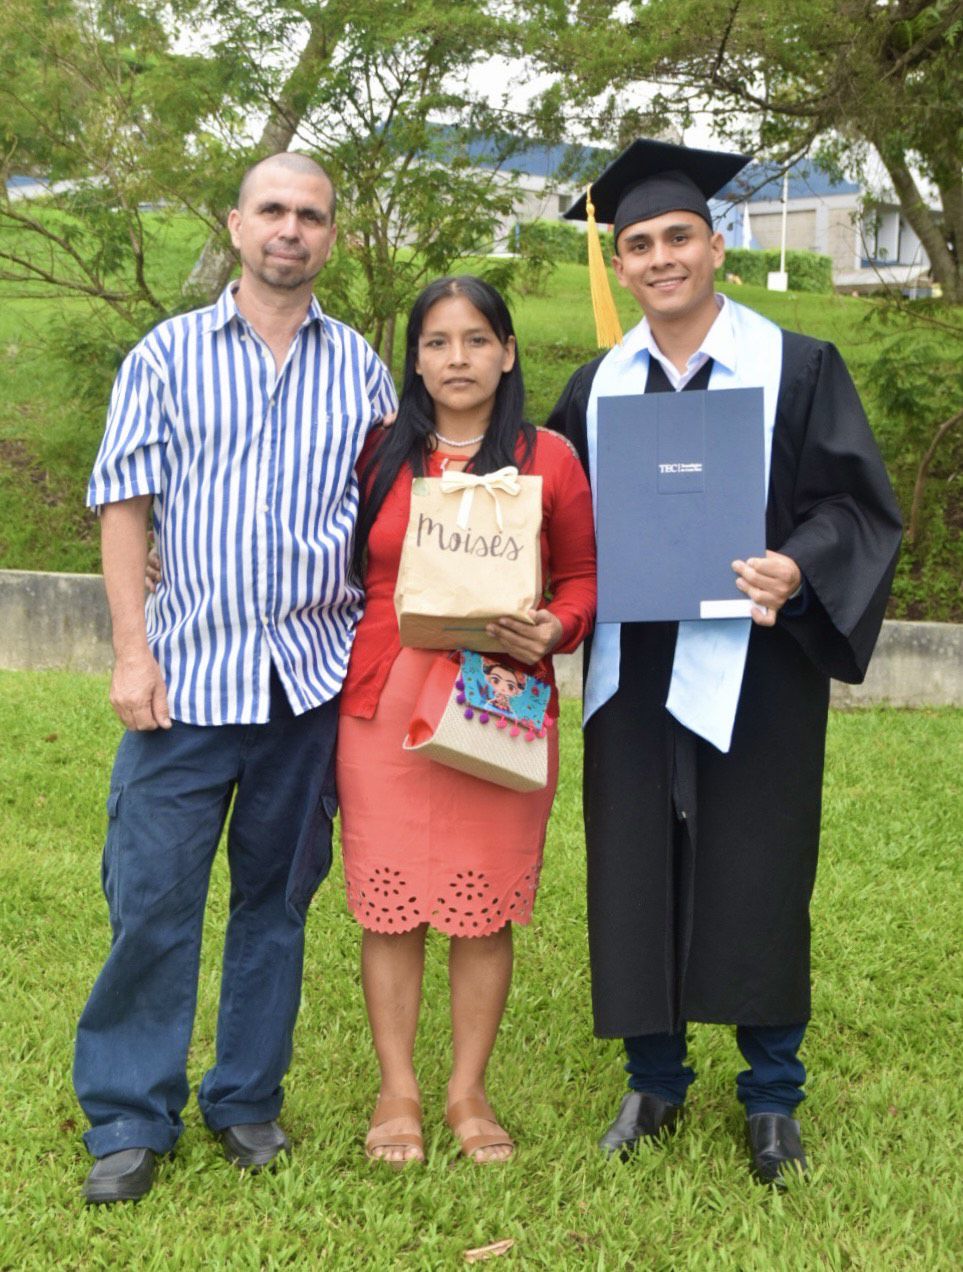 Moisés Morales junto a sus padres el día de la graduación. El joven cuenta que ellos son las personas que más lo inspiran. Foto: Moisés Salguero para LN